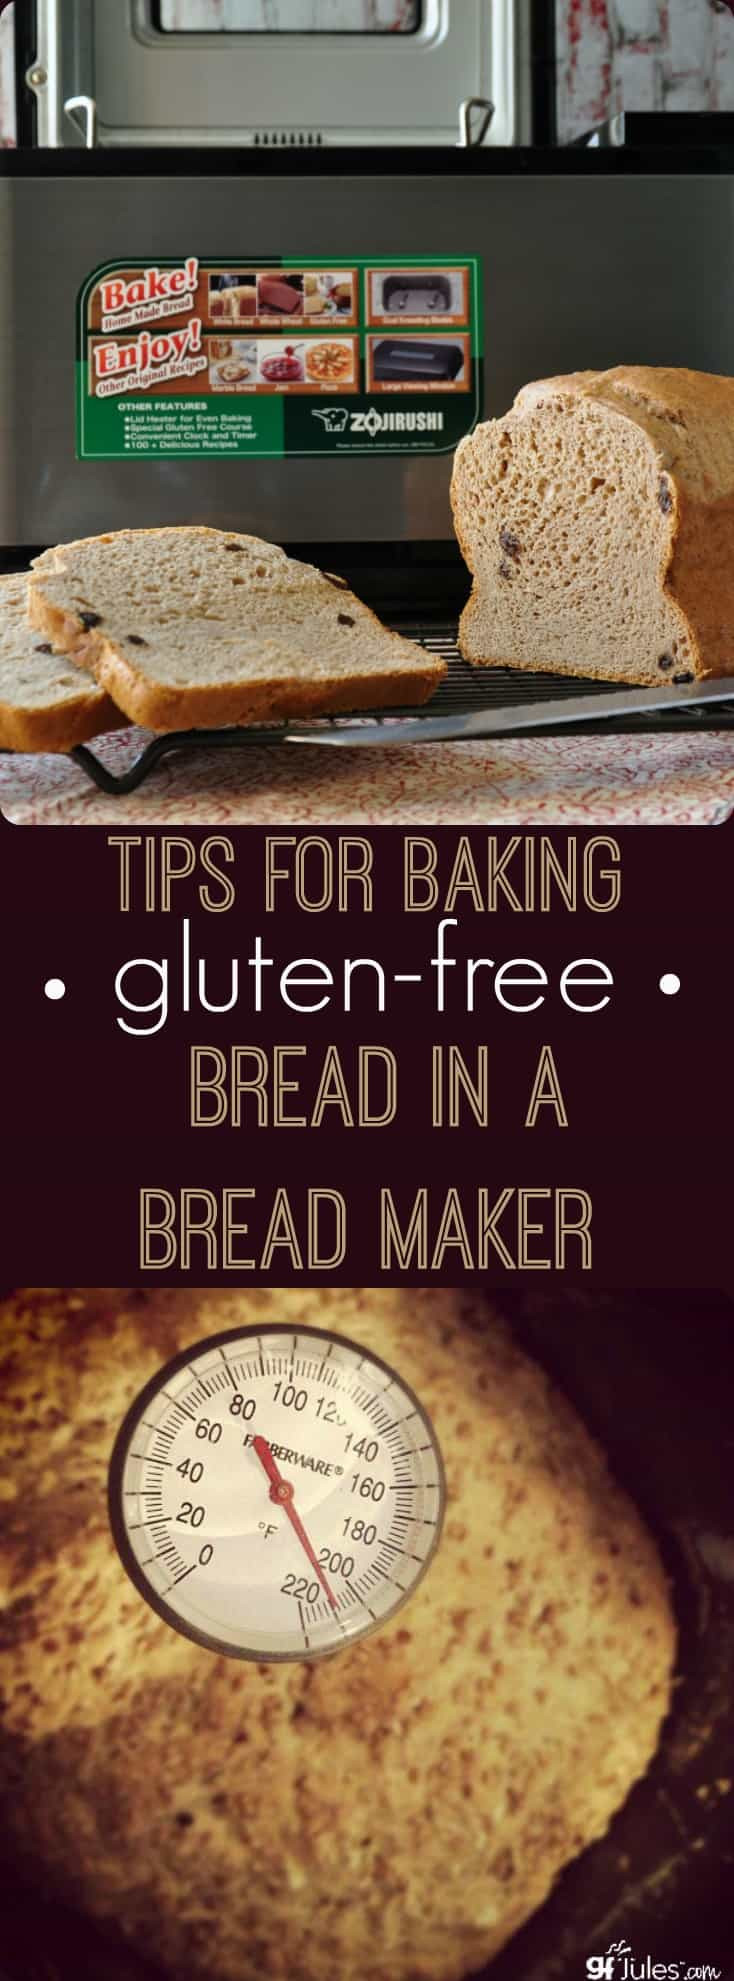 Gluten Free Bread Mix For Bread Machine
 Baking Gluten Free Bread in a Breadmaker